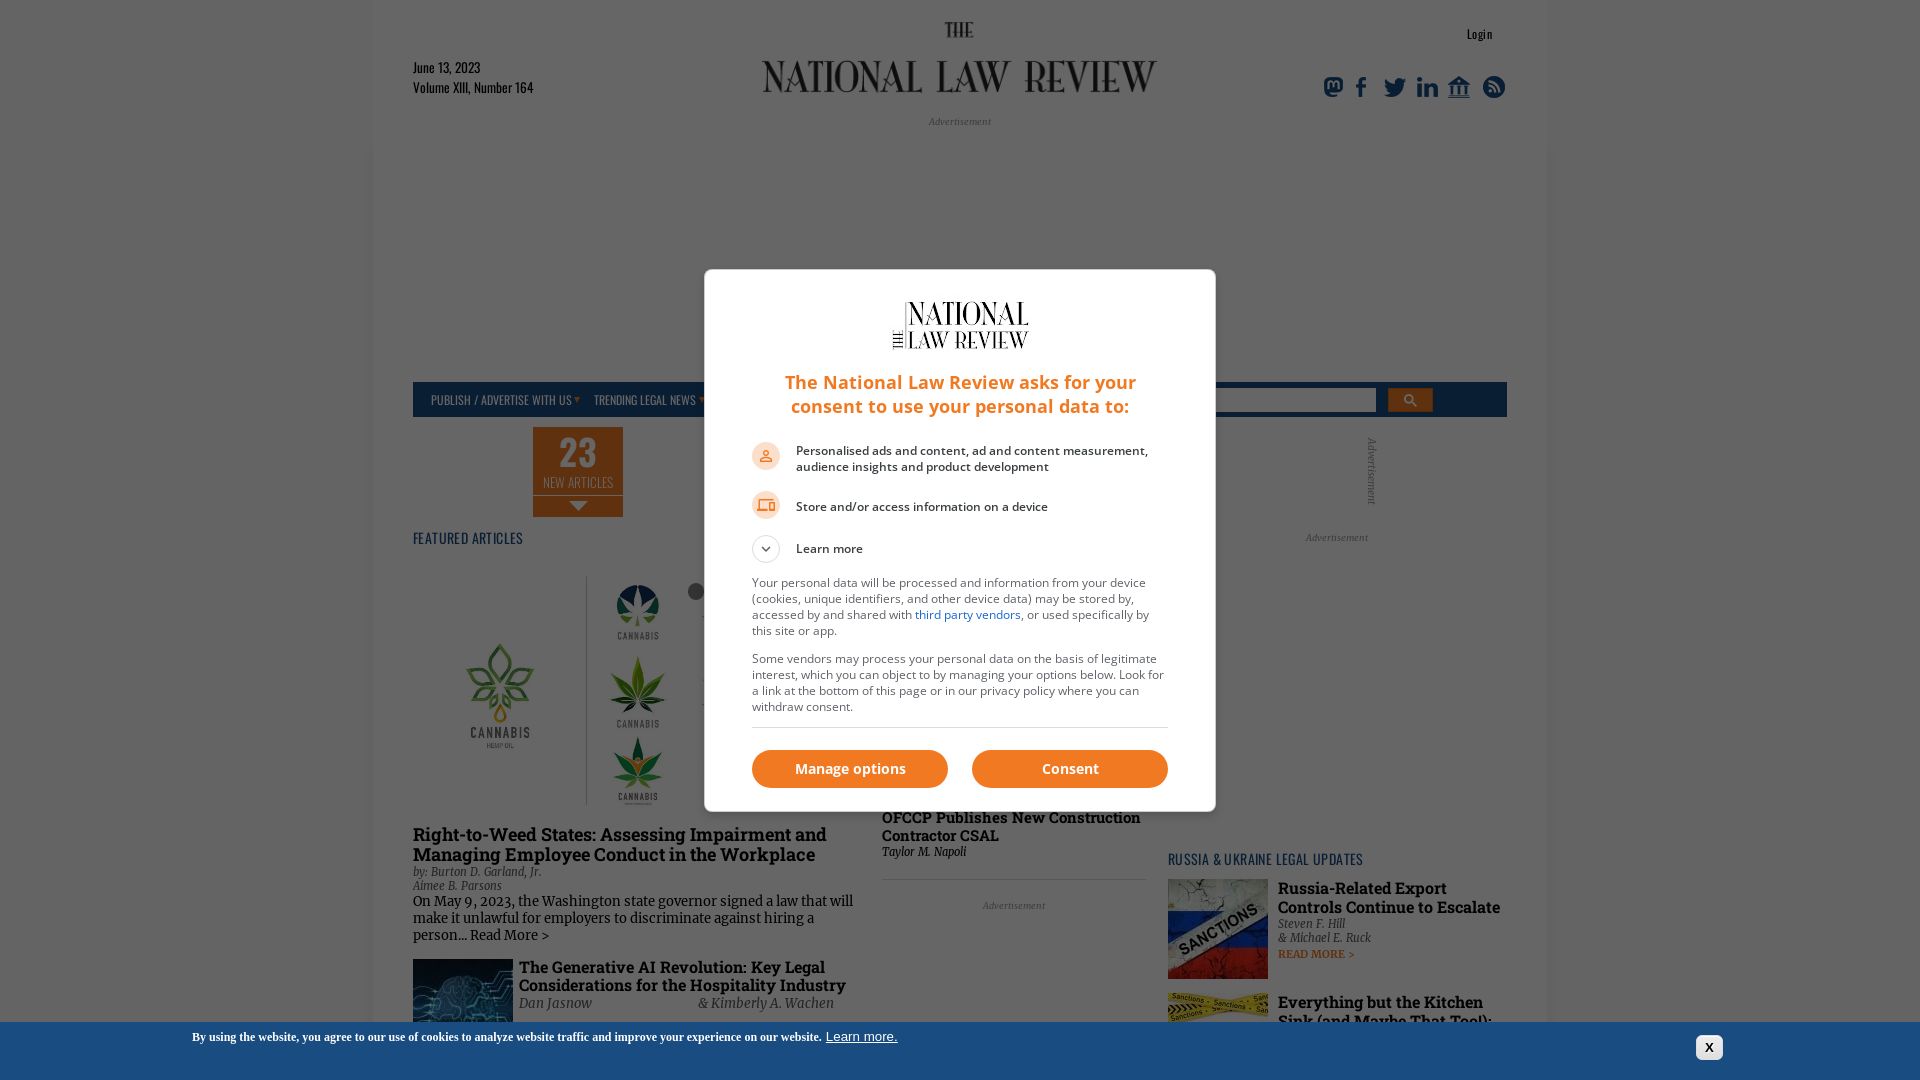 État du site web natlawreview.com est   EN LIGNE